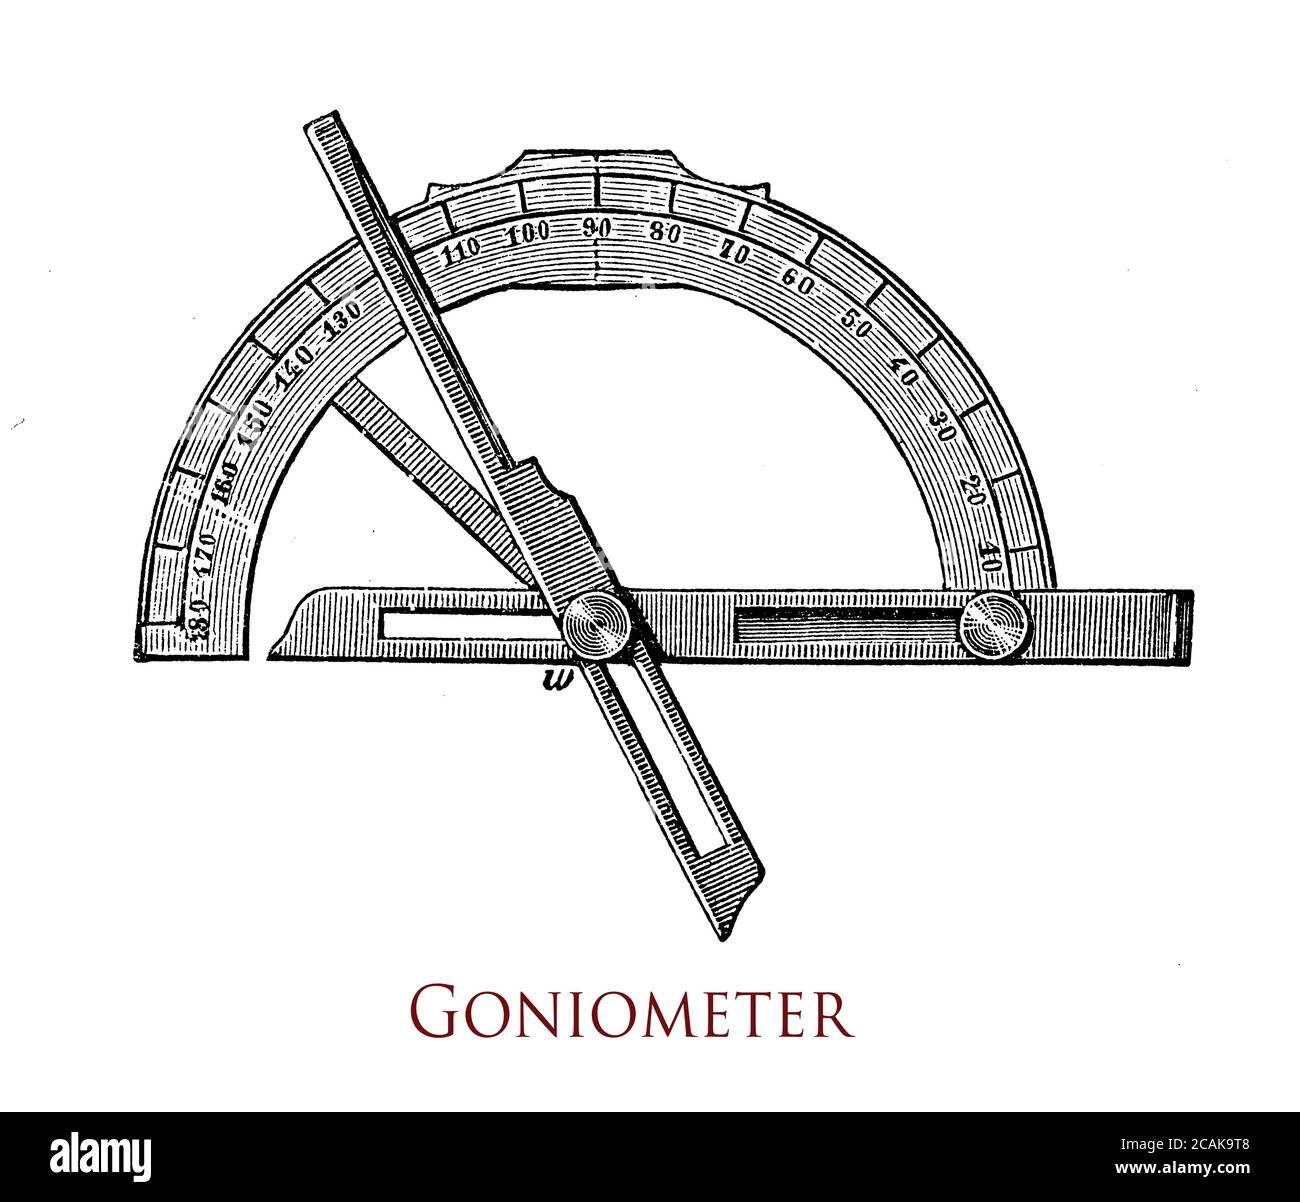 El goniómetro, básicamente un transportador con dos brazos, es un instrumento  para medir un ángulo o para girar un objeto a una posición angular precisa.  Conocida desde el siglo XVI, utilizada en